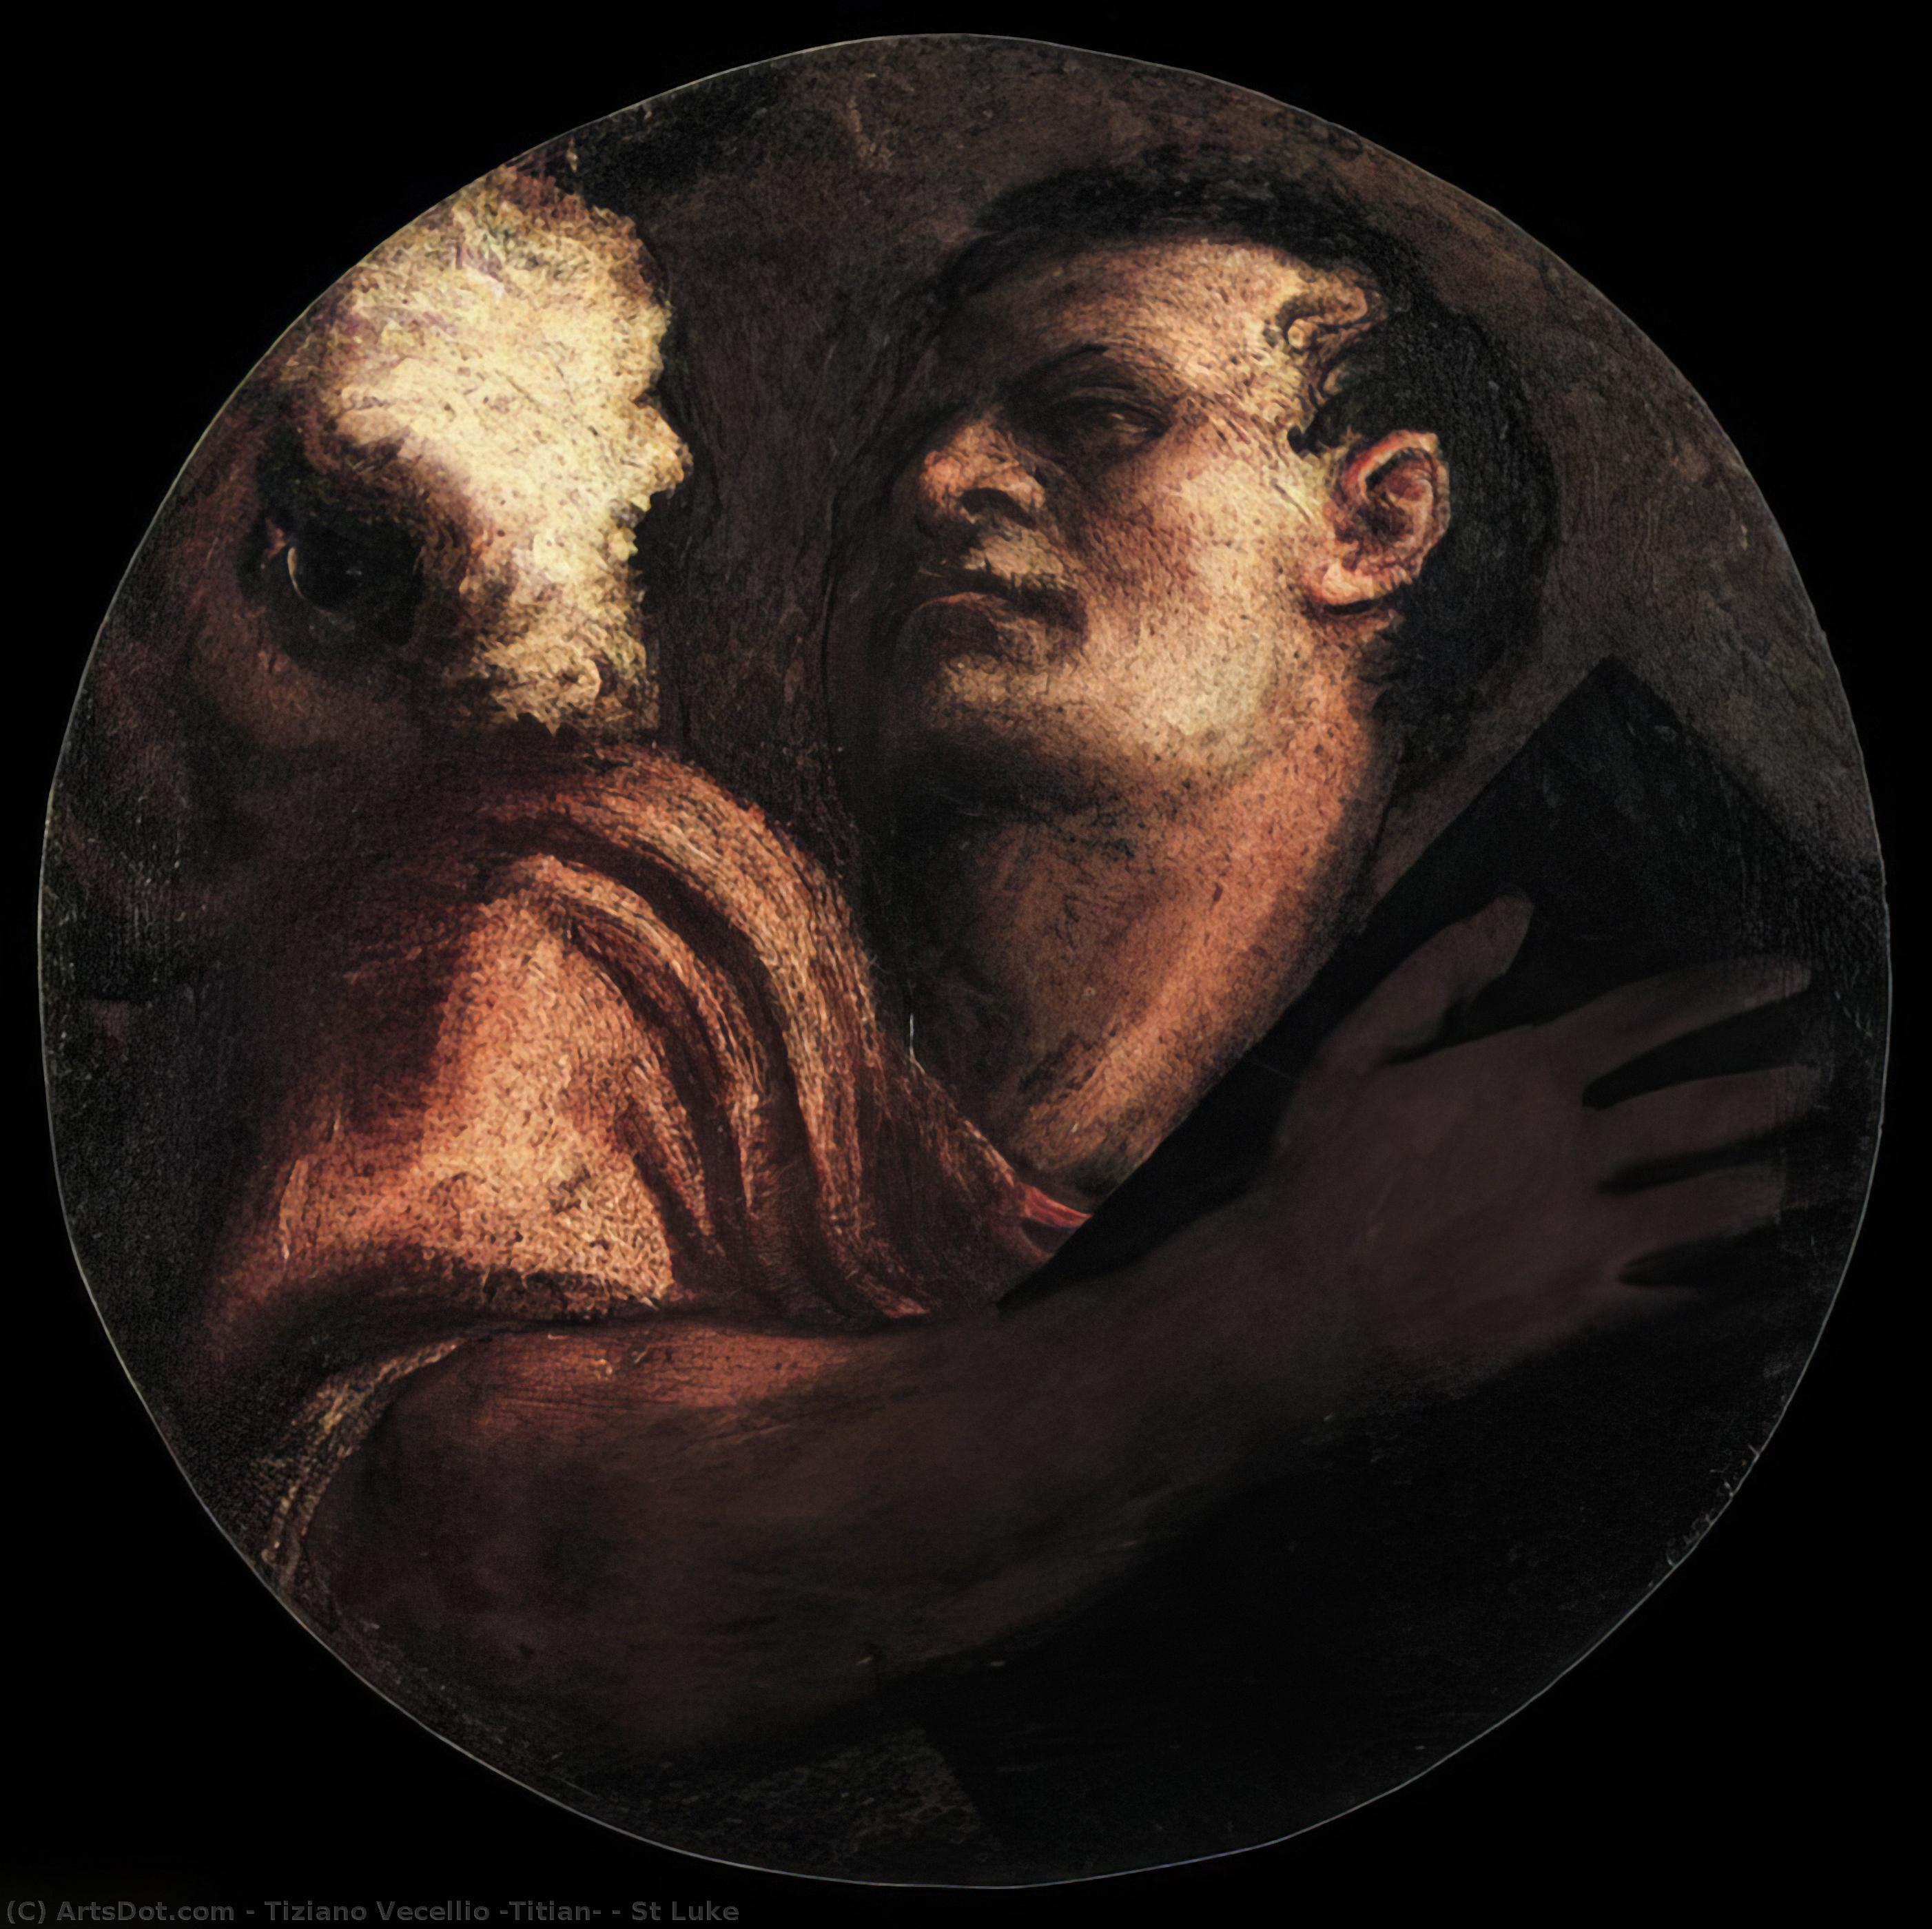 Ordinare Riproduzioni D'arte San Luca di Tiziano Vecellio (Titian) (1490-1576, Italy) | ArtsDot.com